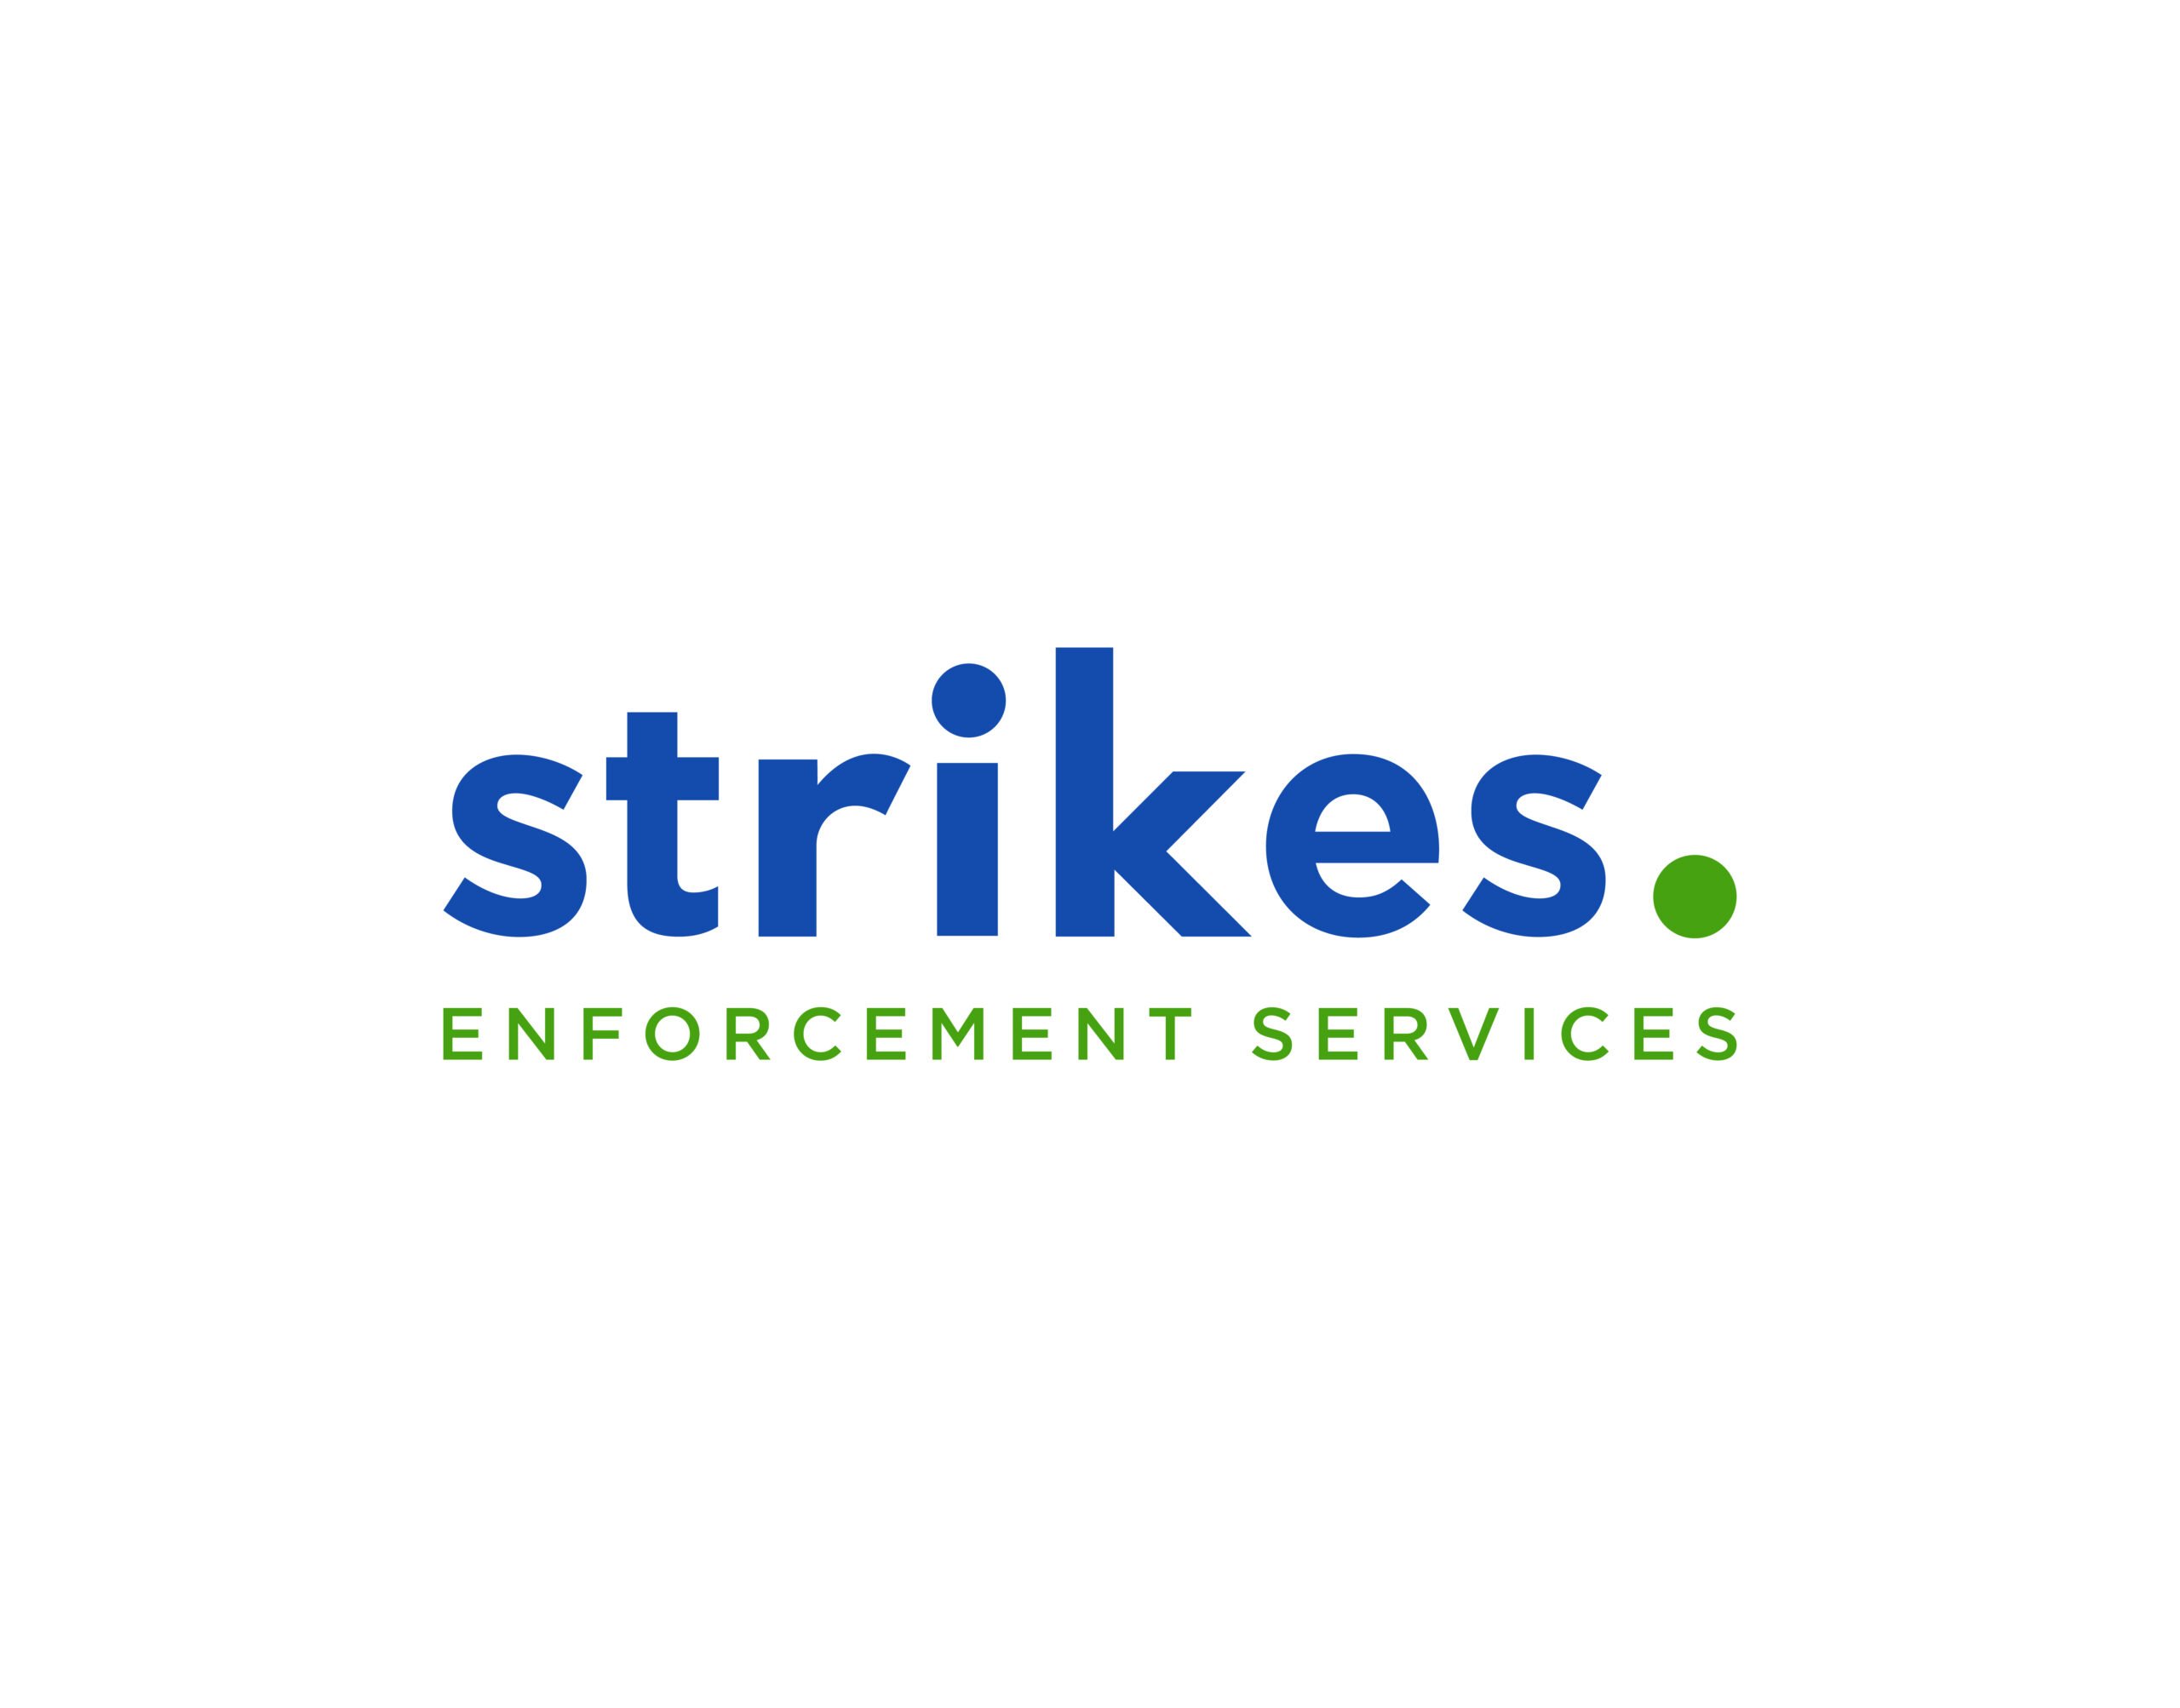 Strikes's logo